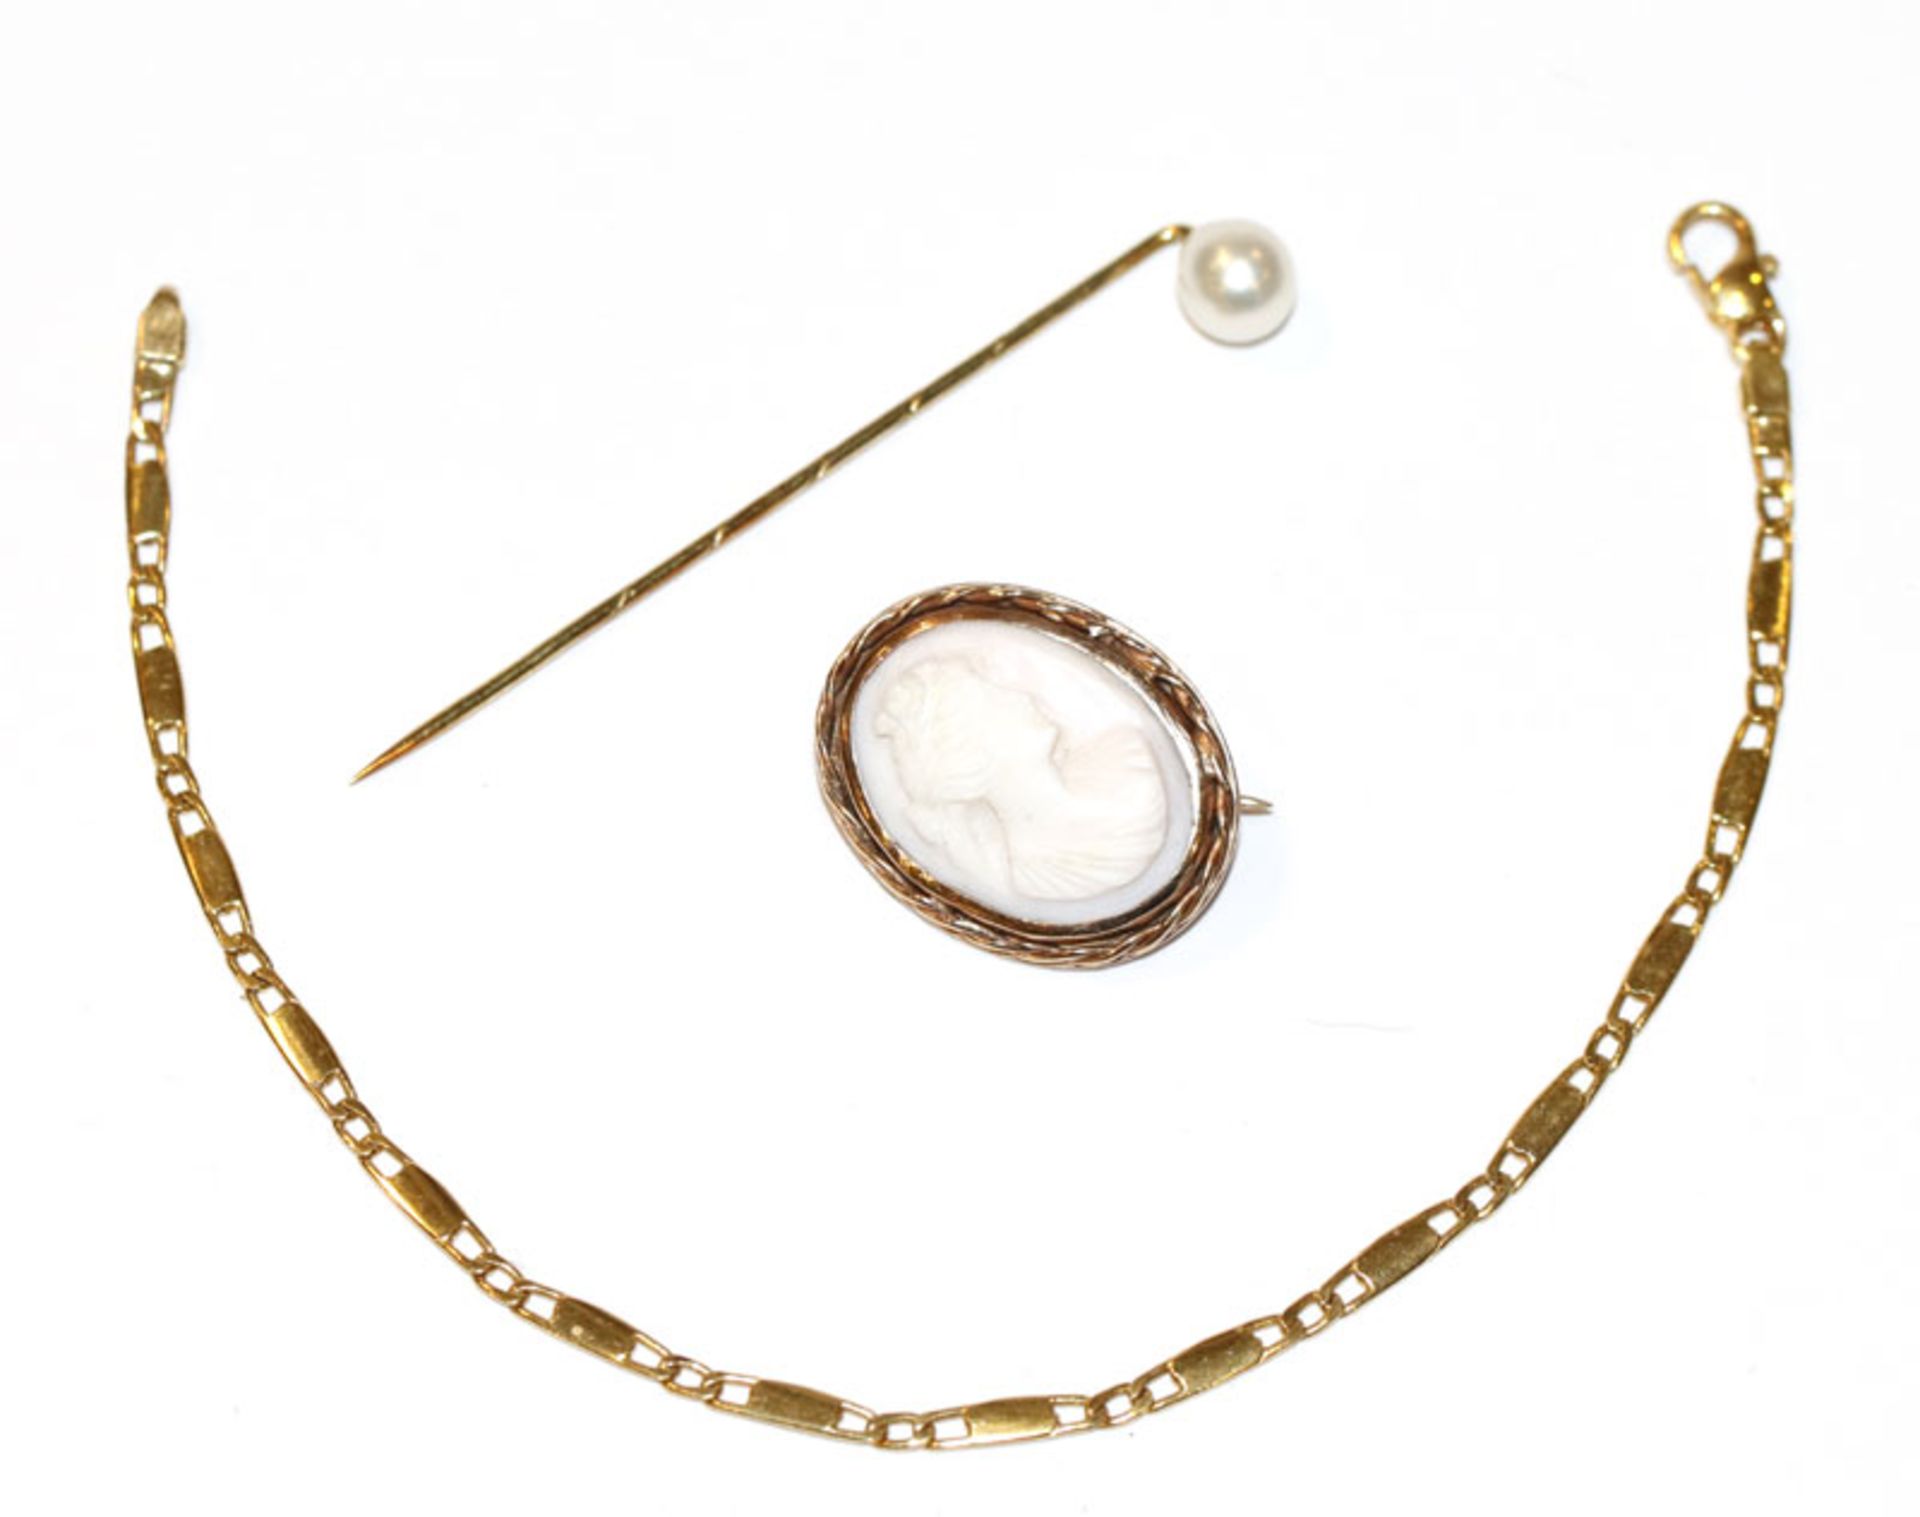 Konvolut: 14 k Gelbgold Armband, L 18 cm, 14 k Gelbgold Krawattennadel mit Perle, L 5,5 cm, und